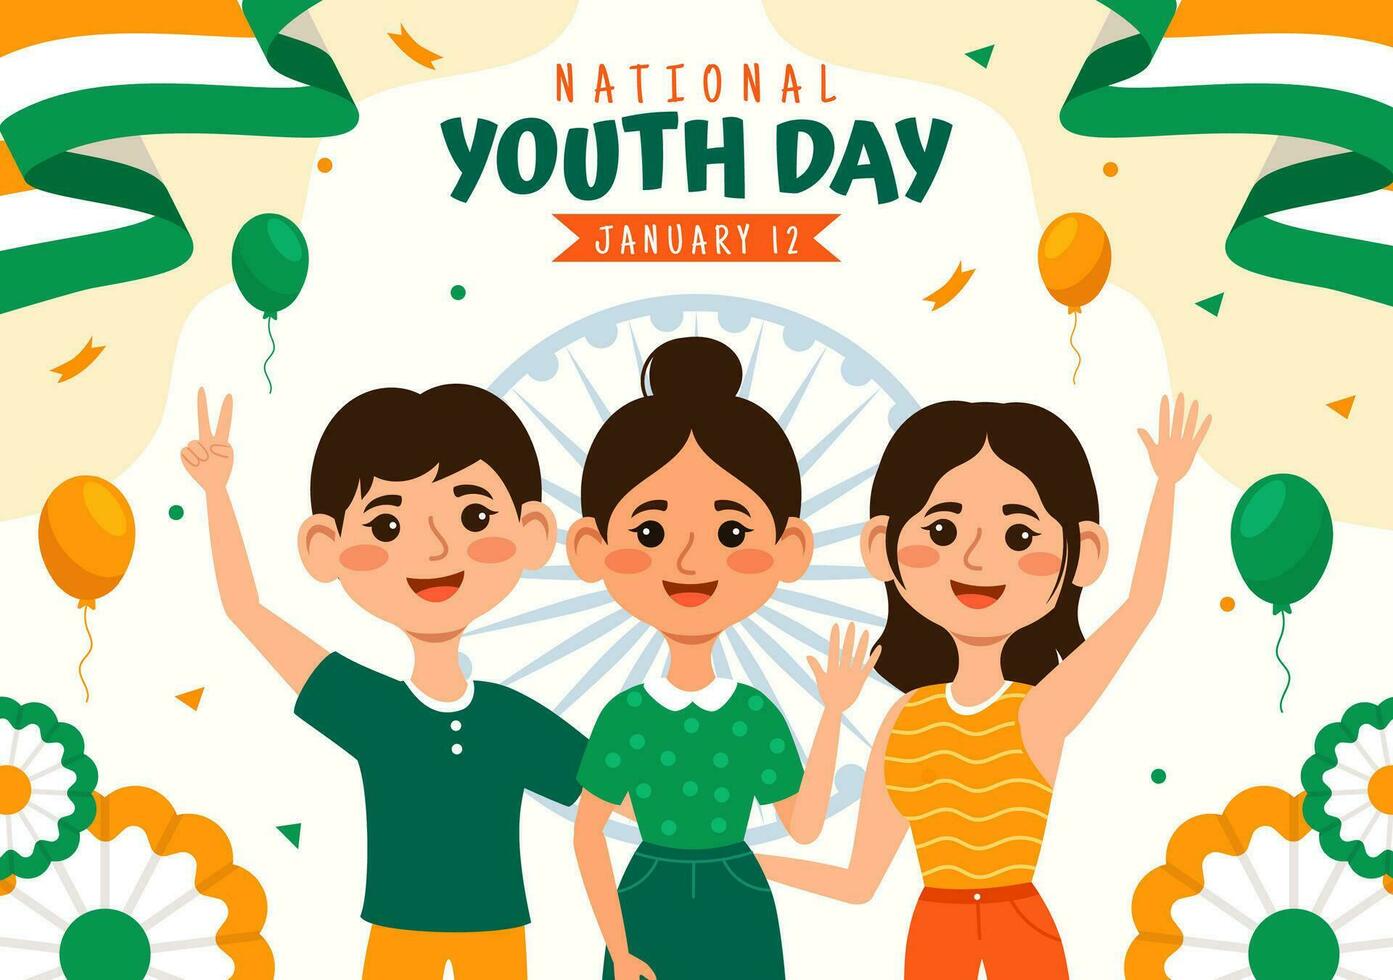 glücklich International Jugend Tag von Indien Vektor Illustration mit indisch Flagge und jung Jungs oder Mädchen Zusammengehörigkeit im eben Kinder Karikatur Hintergrund